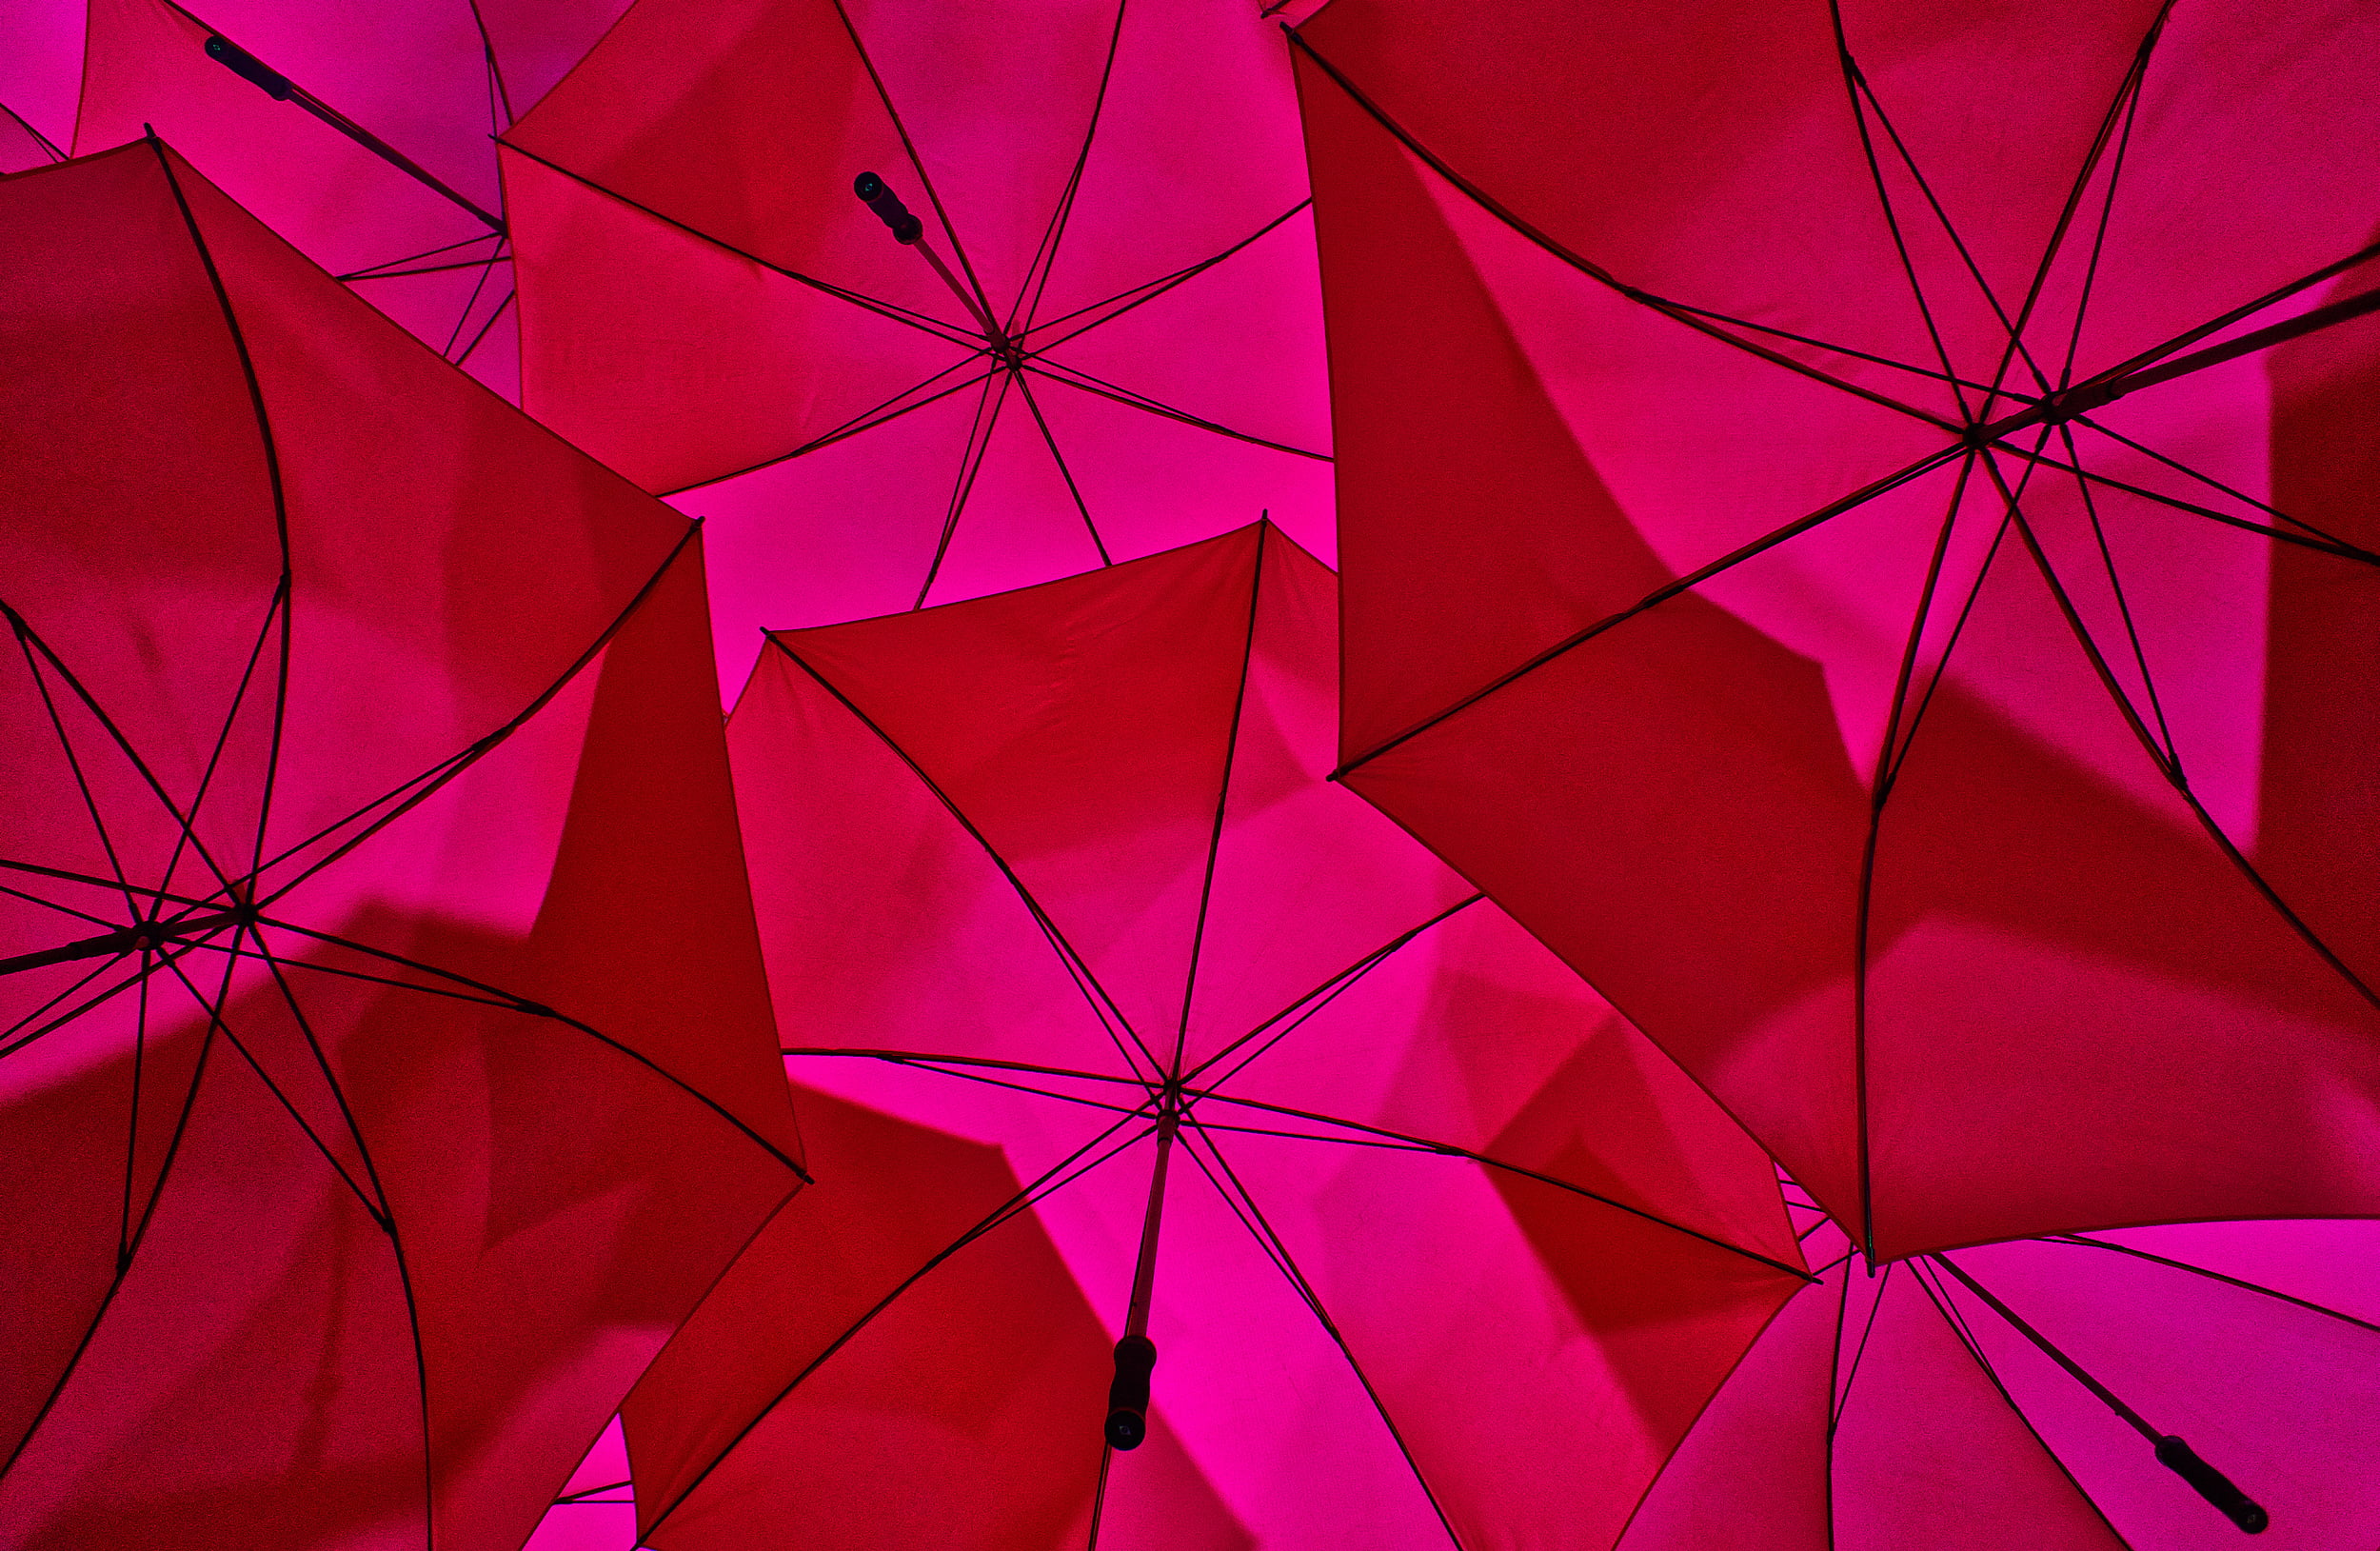 red umbrellas during daytime